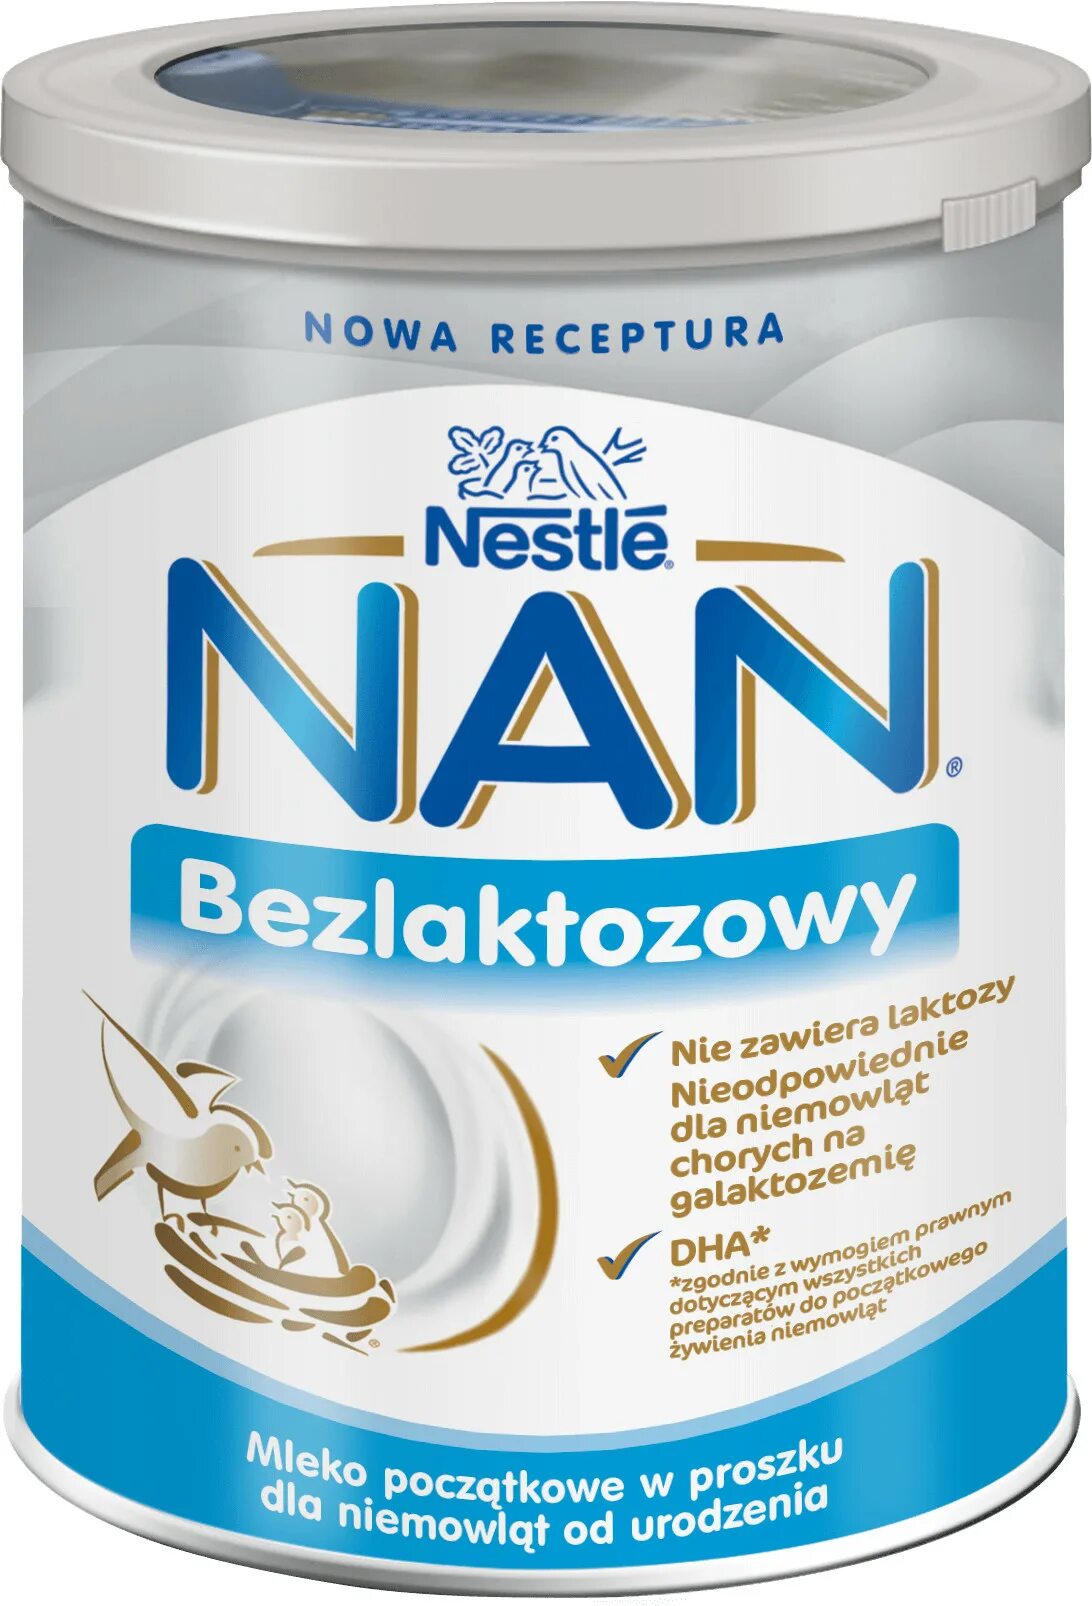 Нан антиаллергия купить. Nan 400g Безлактозный. Нан 1 Безлактозный. Nestle nan Expert Pro 800г гипералергенная. Nan Expert Pro Безлактозный.